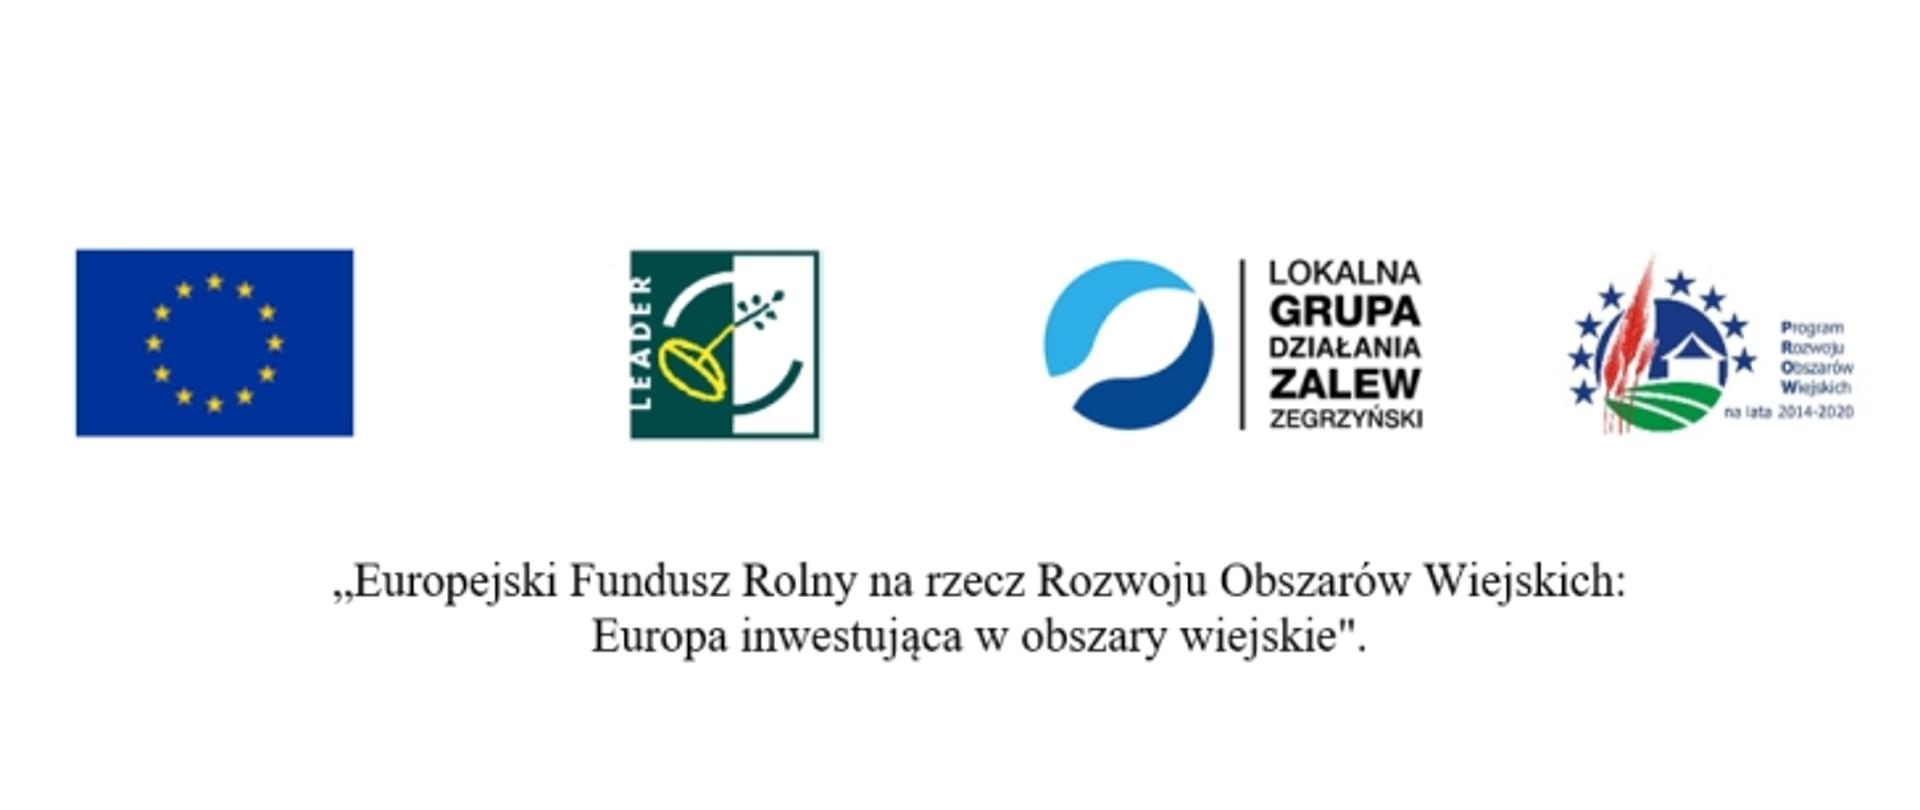 Flaga Unii Europejskiej, logo LEADER, logo Lokalnej grupy Działania Zalew Zegrzyński, PROW 2014-2020 „Europejski Fundusz Rolny na rzecz Rozwoju Obszarów Wiejskich: Europa inwestująca w obszary wiejskie"